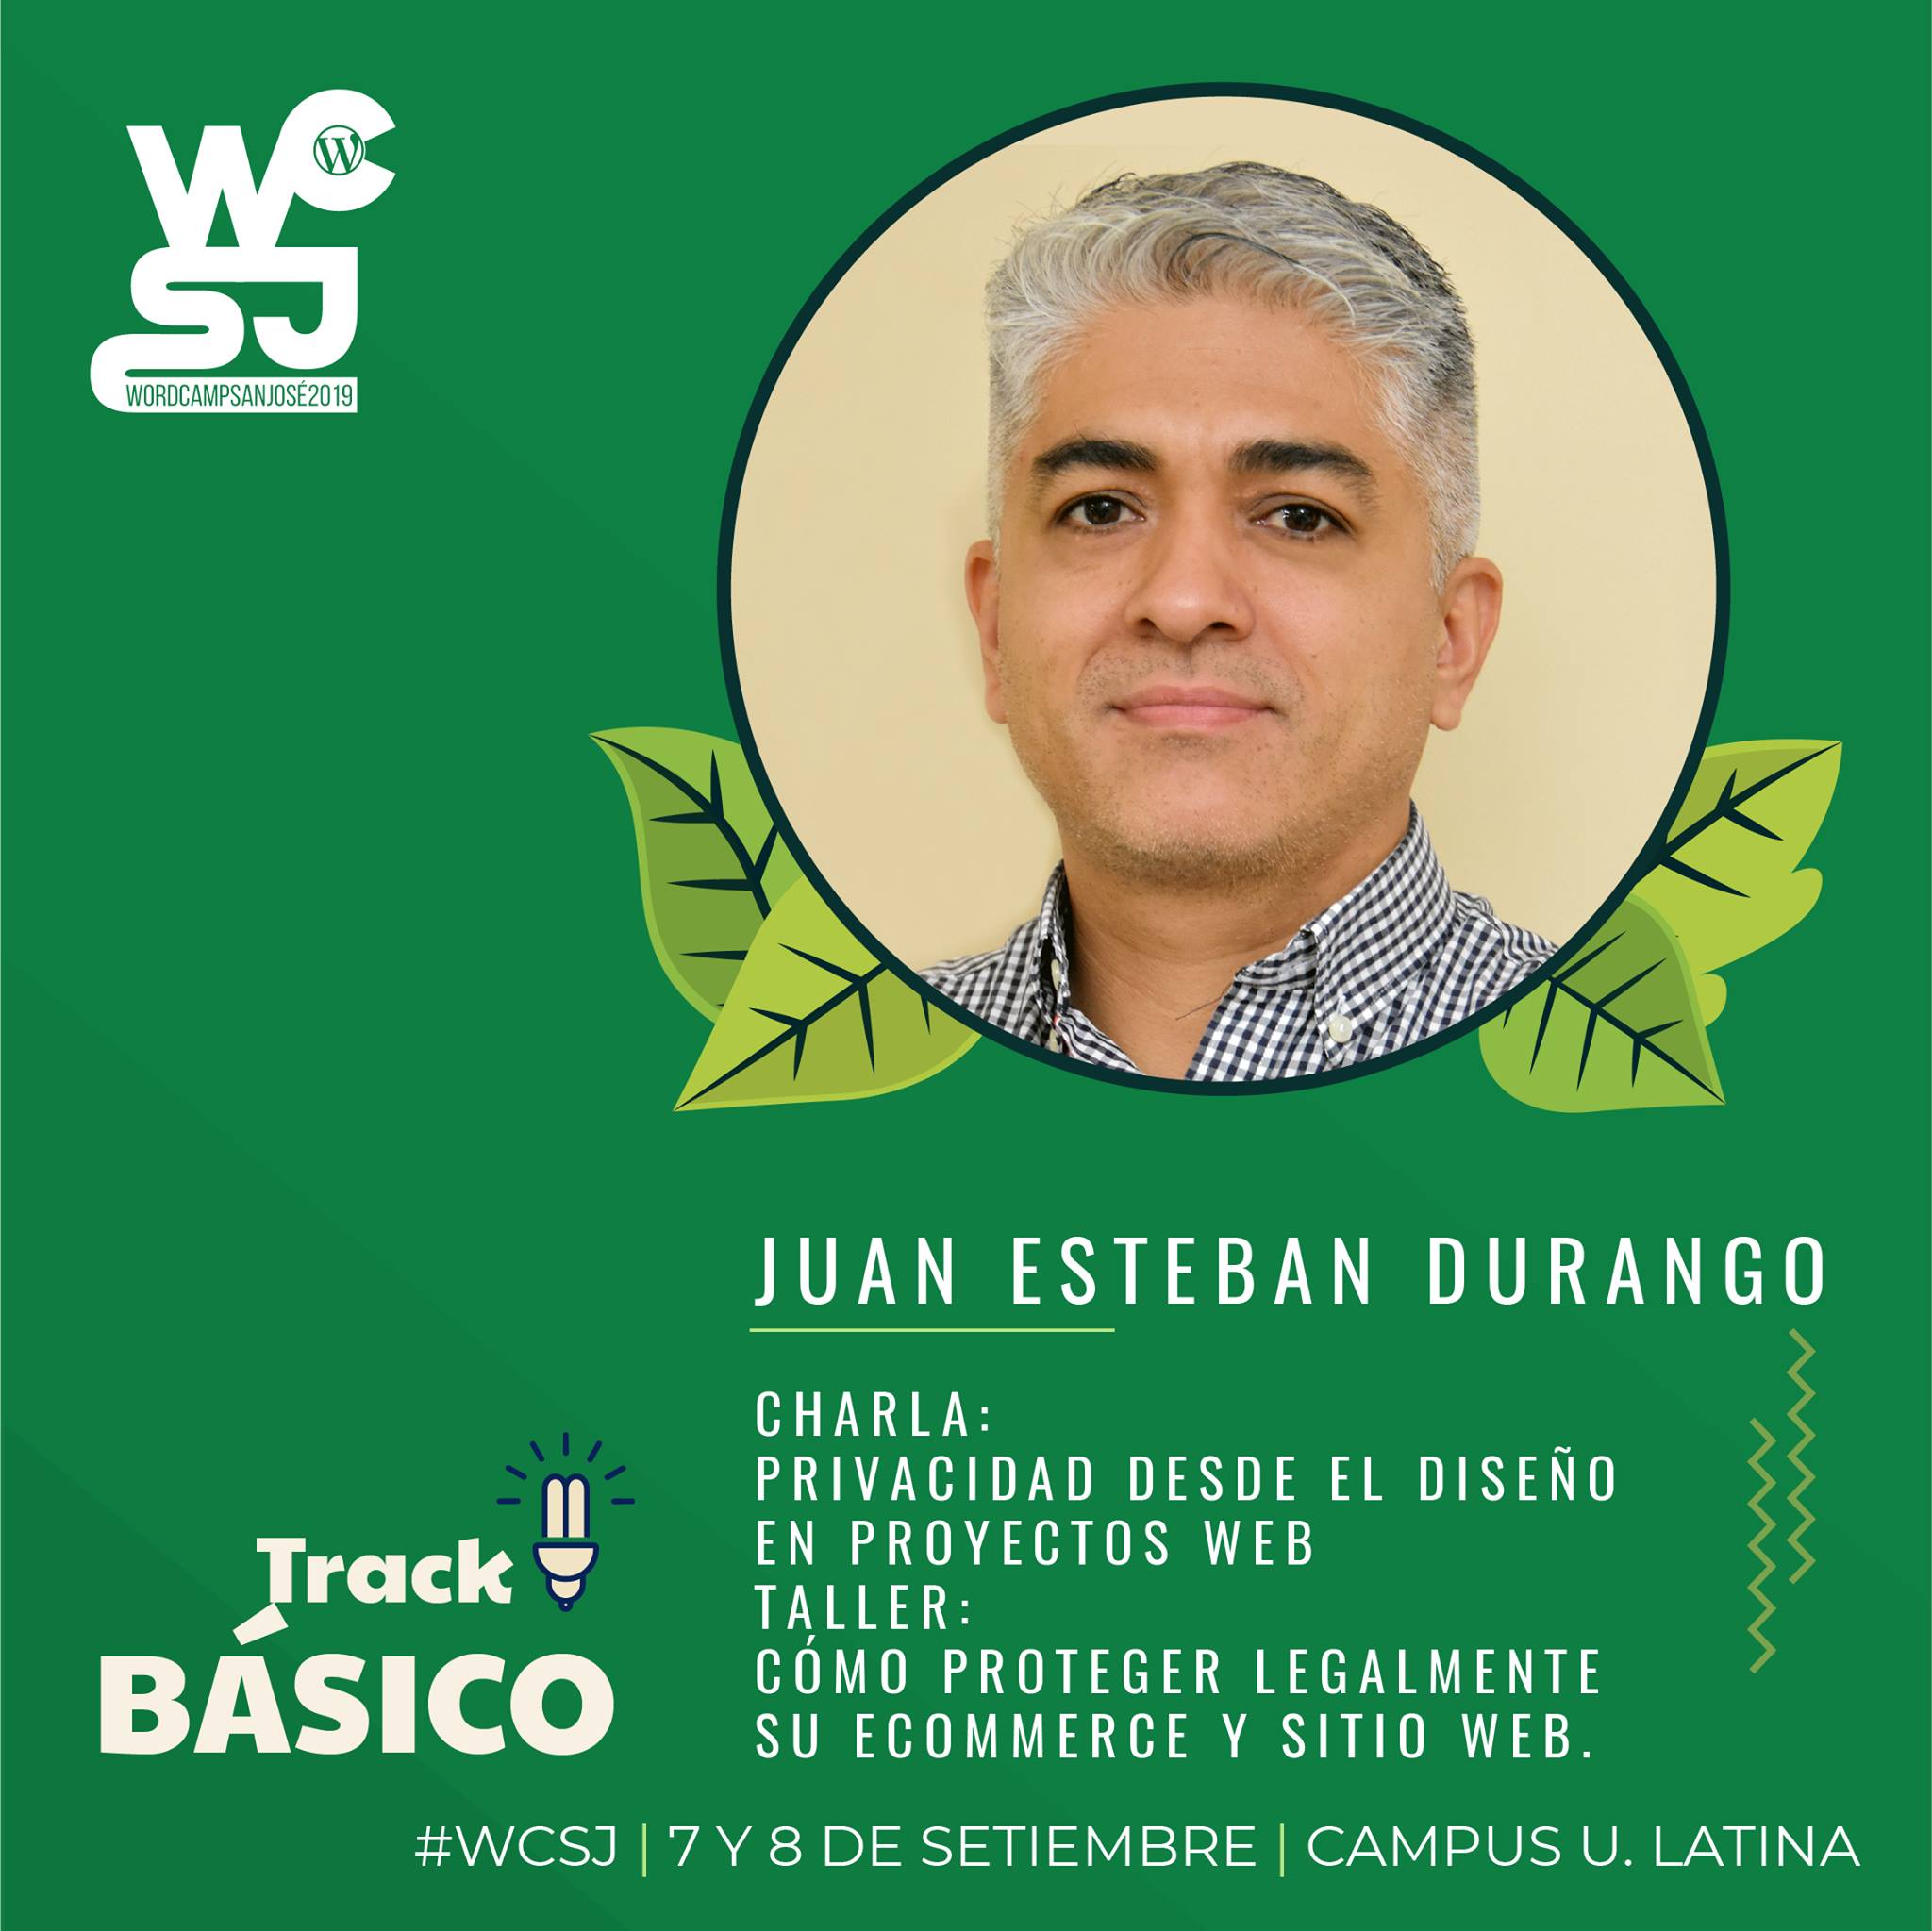 Juan Esteban Durango